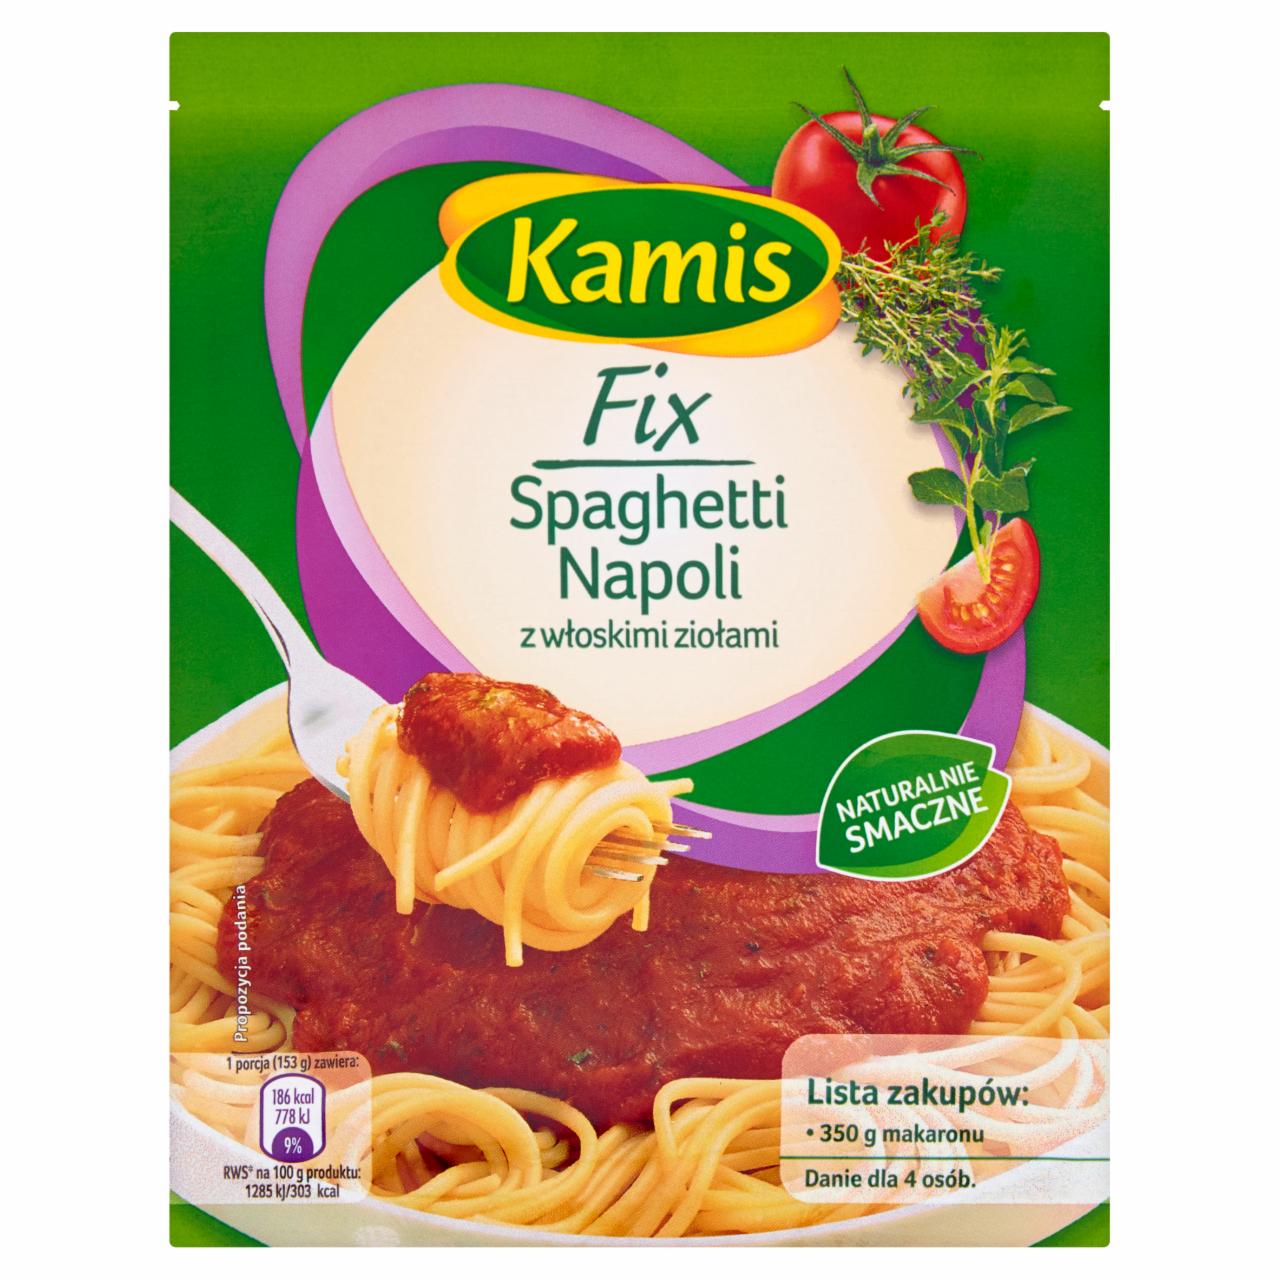 Zdjęcia - Kamis Fix Spaghetti Napoli z włoskimi ziołami 45 g